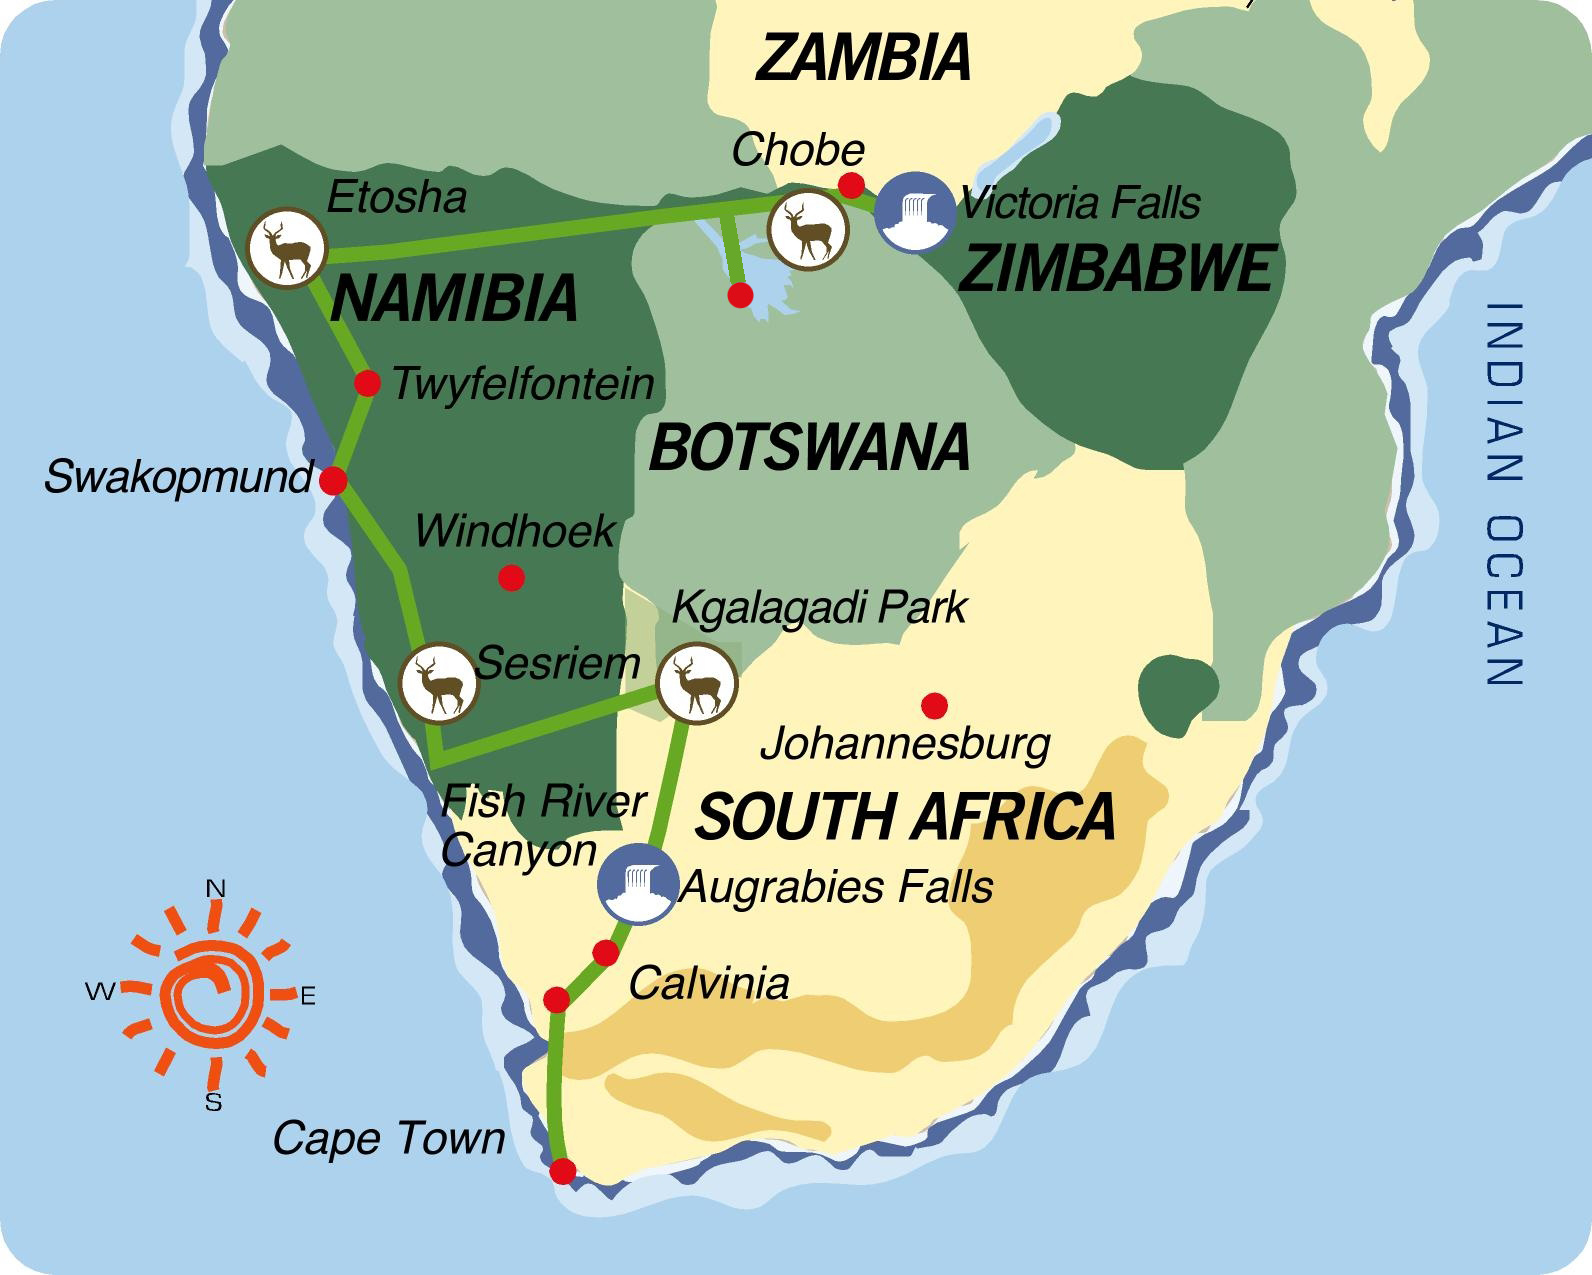  Reiseverlauf: Transkalahari Adventure - Nordtour - 24-tägige Afrika Kleingruppenreise vom Kap bis zu den Viktoriafällen